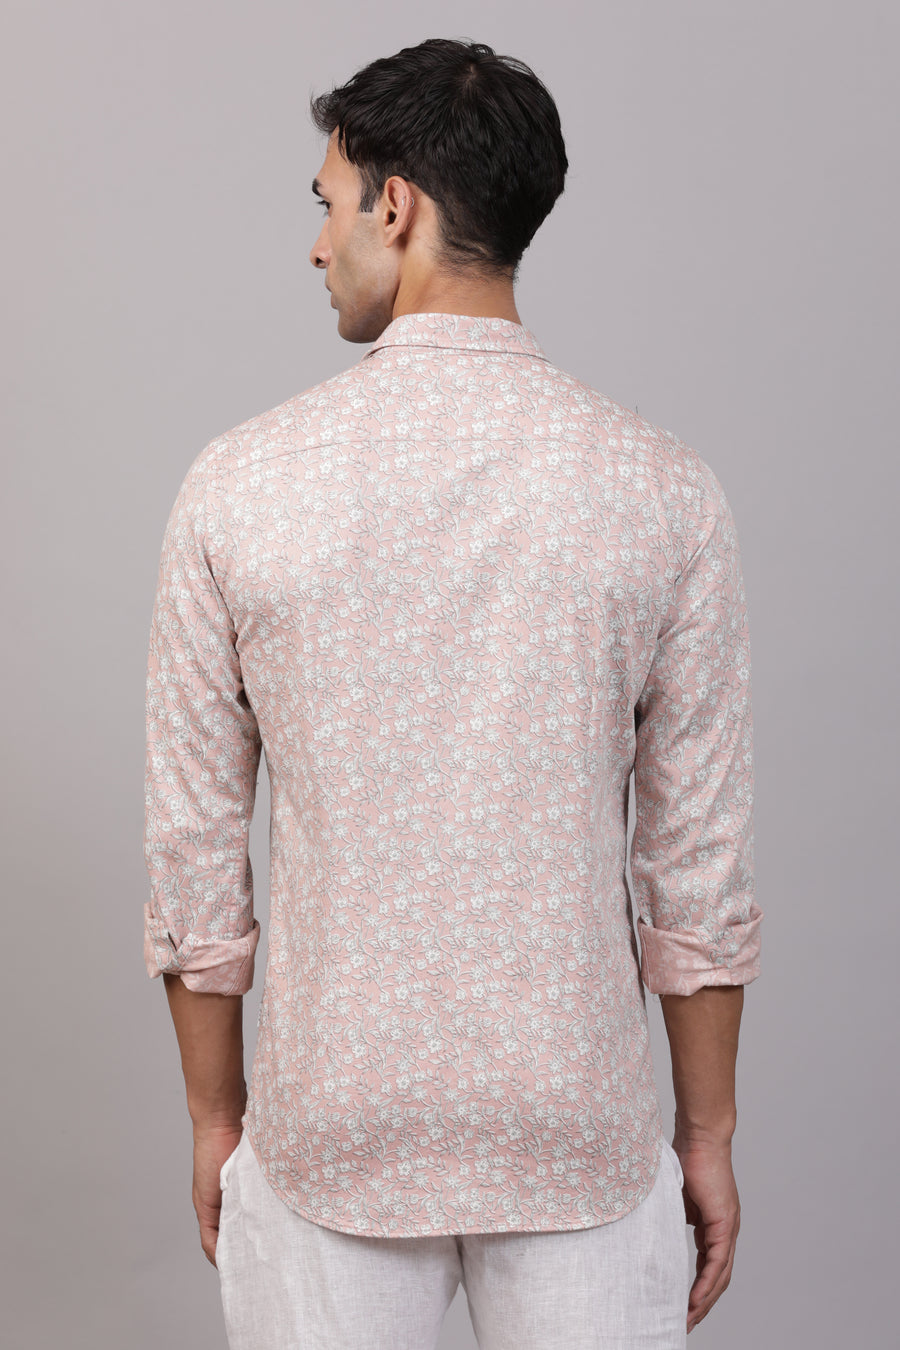 Mario - Dobby Floral Printed Shirt - Pink